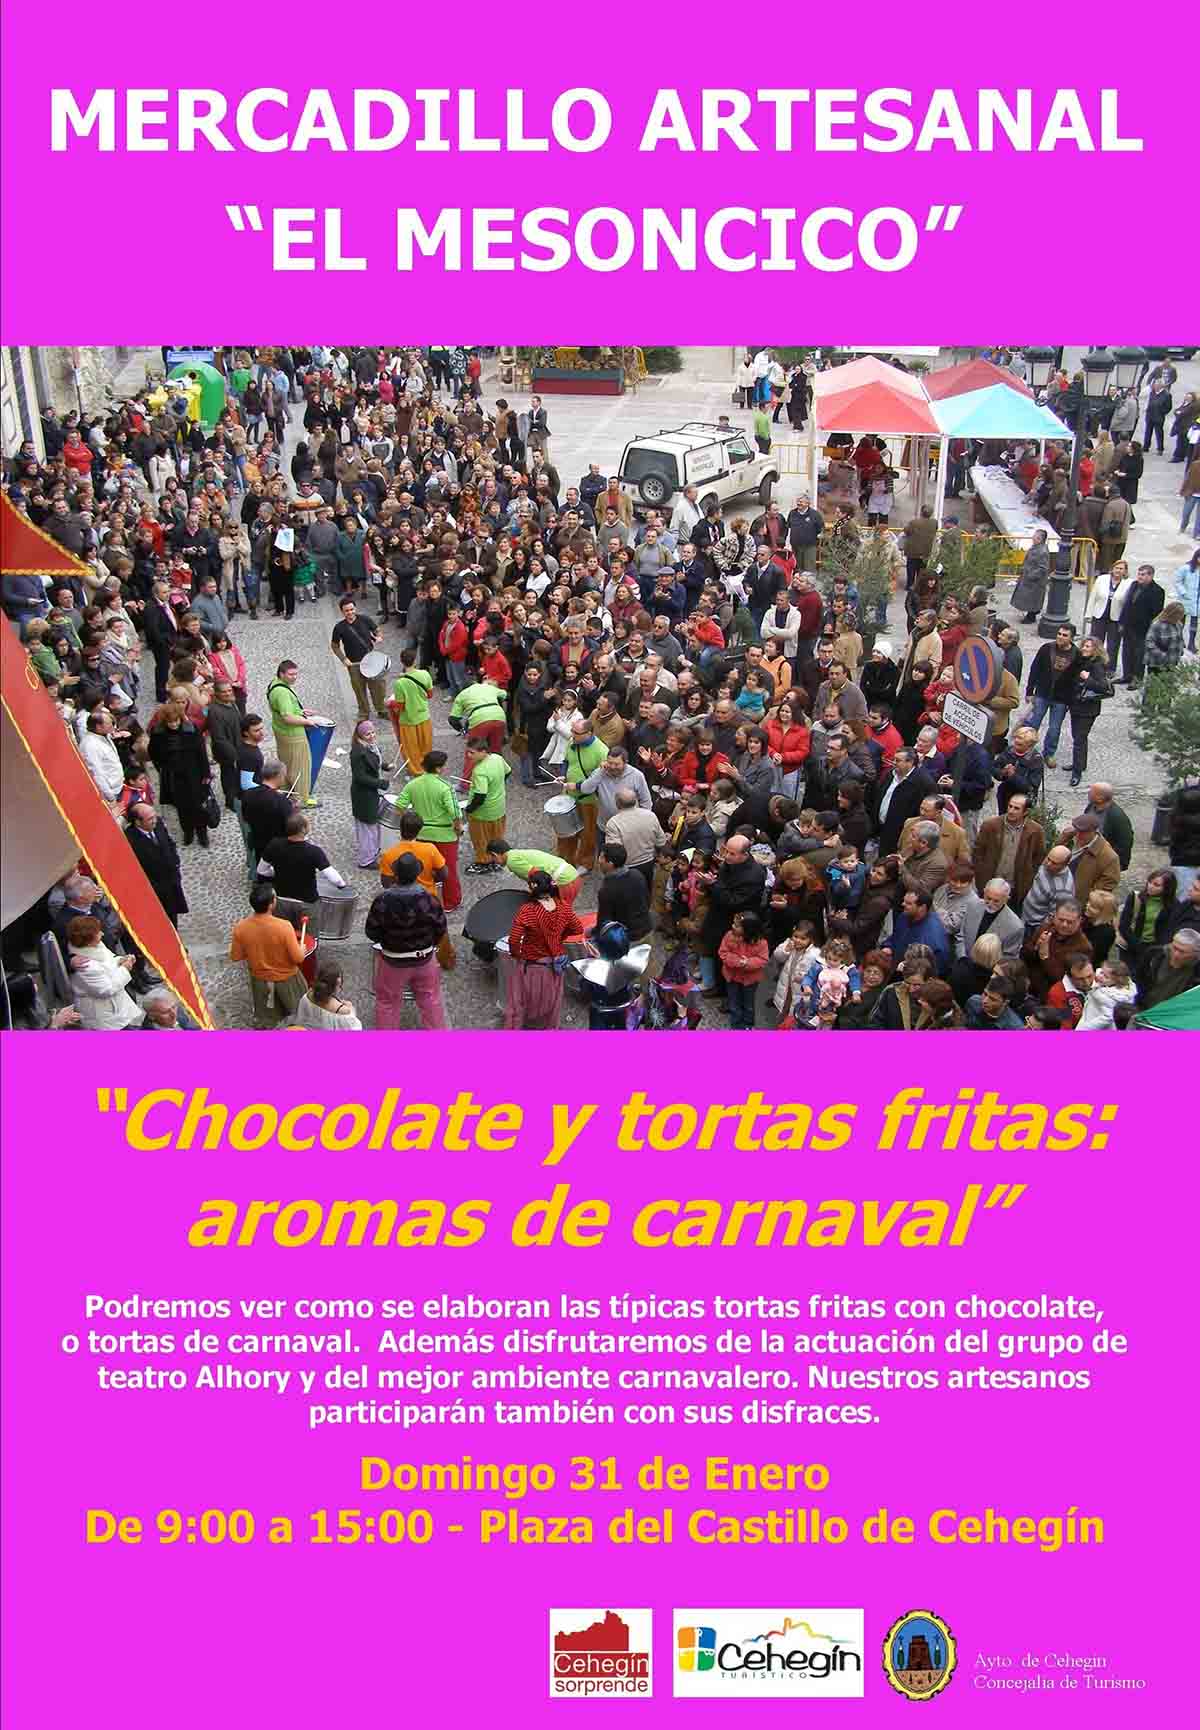 Llega a Cehegín el Mercadillo Artesanal ‘El Mesoncico’ con aromas de carnaval